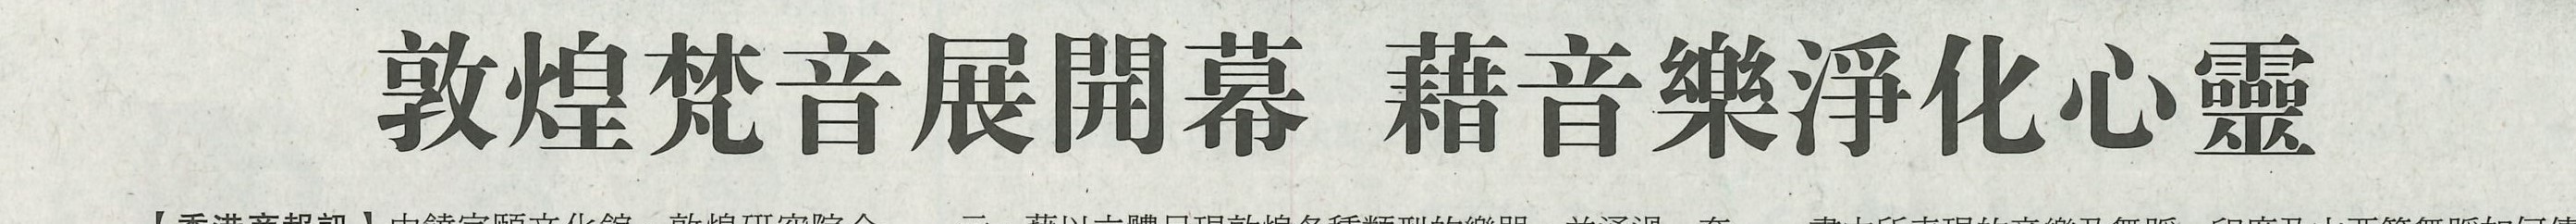 2018-05-26 | 香港商报 | A10 | 敦煌梵音展开幕 借音乐净化心灵